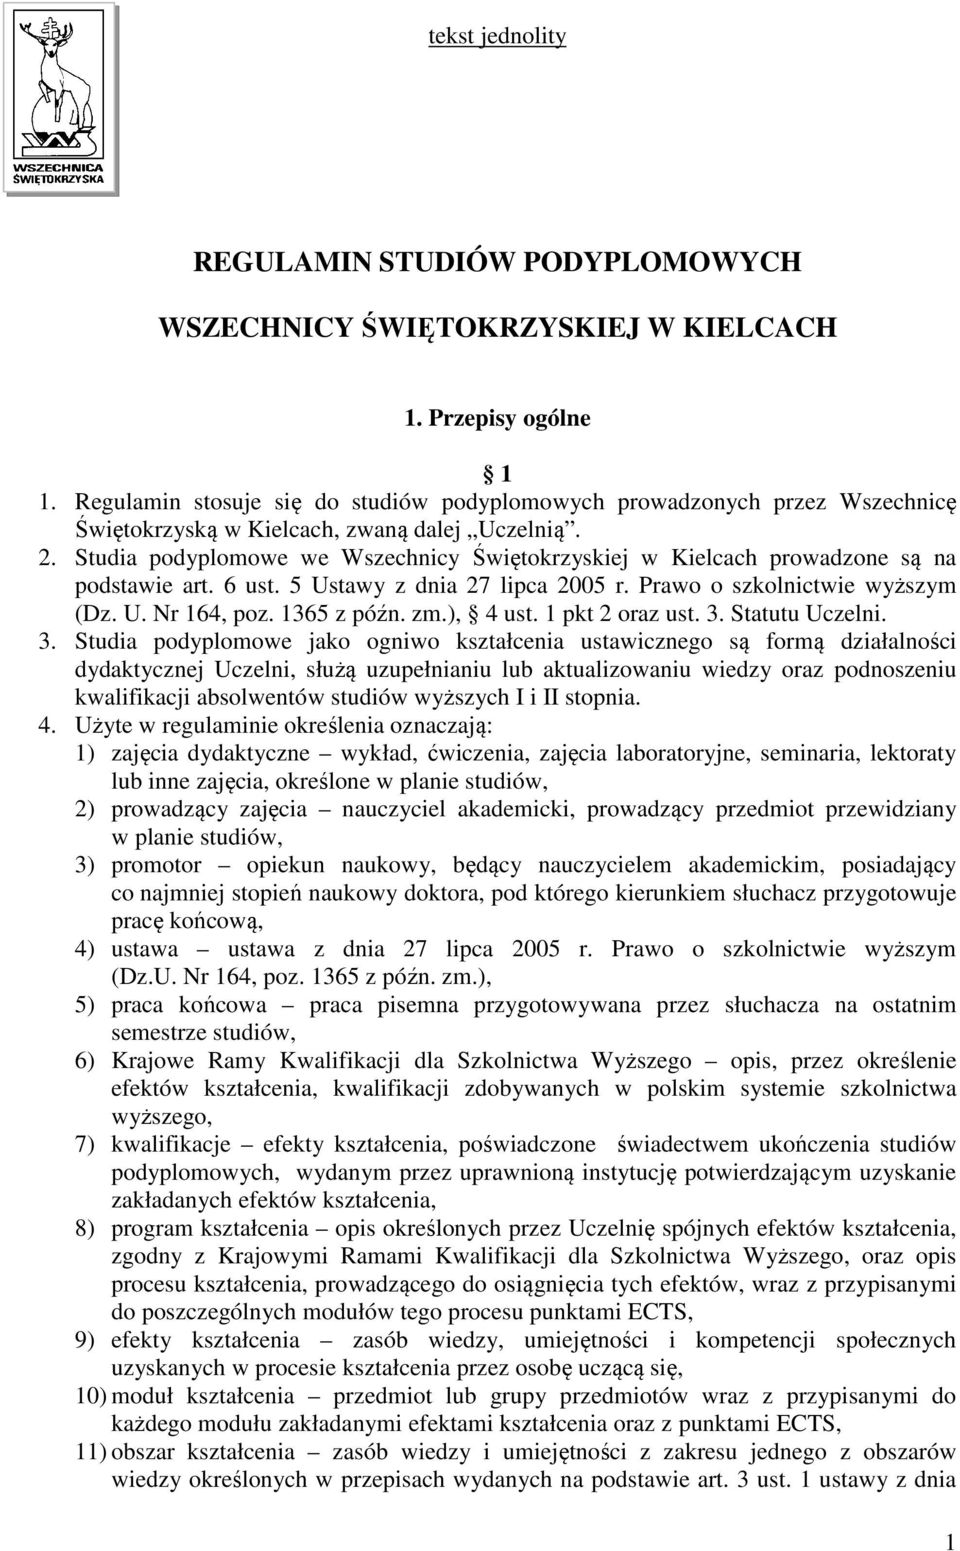 Studia podyplomowe we Wszechnicy Świętokrzyskiej w Kielcach prowadzone są na podstawie art. 6 ust. 5 Ustawy z dnia 27 lipca 2005 r. Prawo o szkolnictwie wyższym (Dz. U. Nr 164, poz. 1365 z późn. zm.